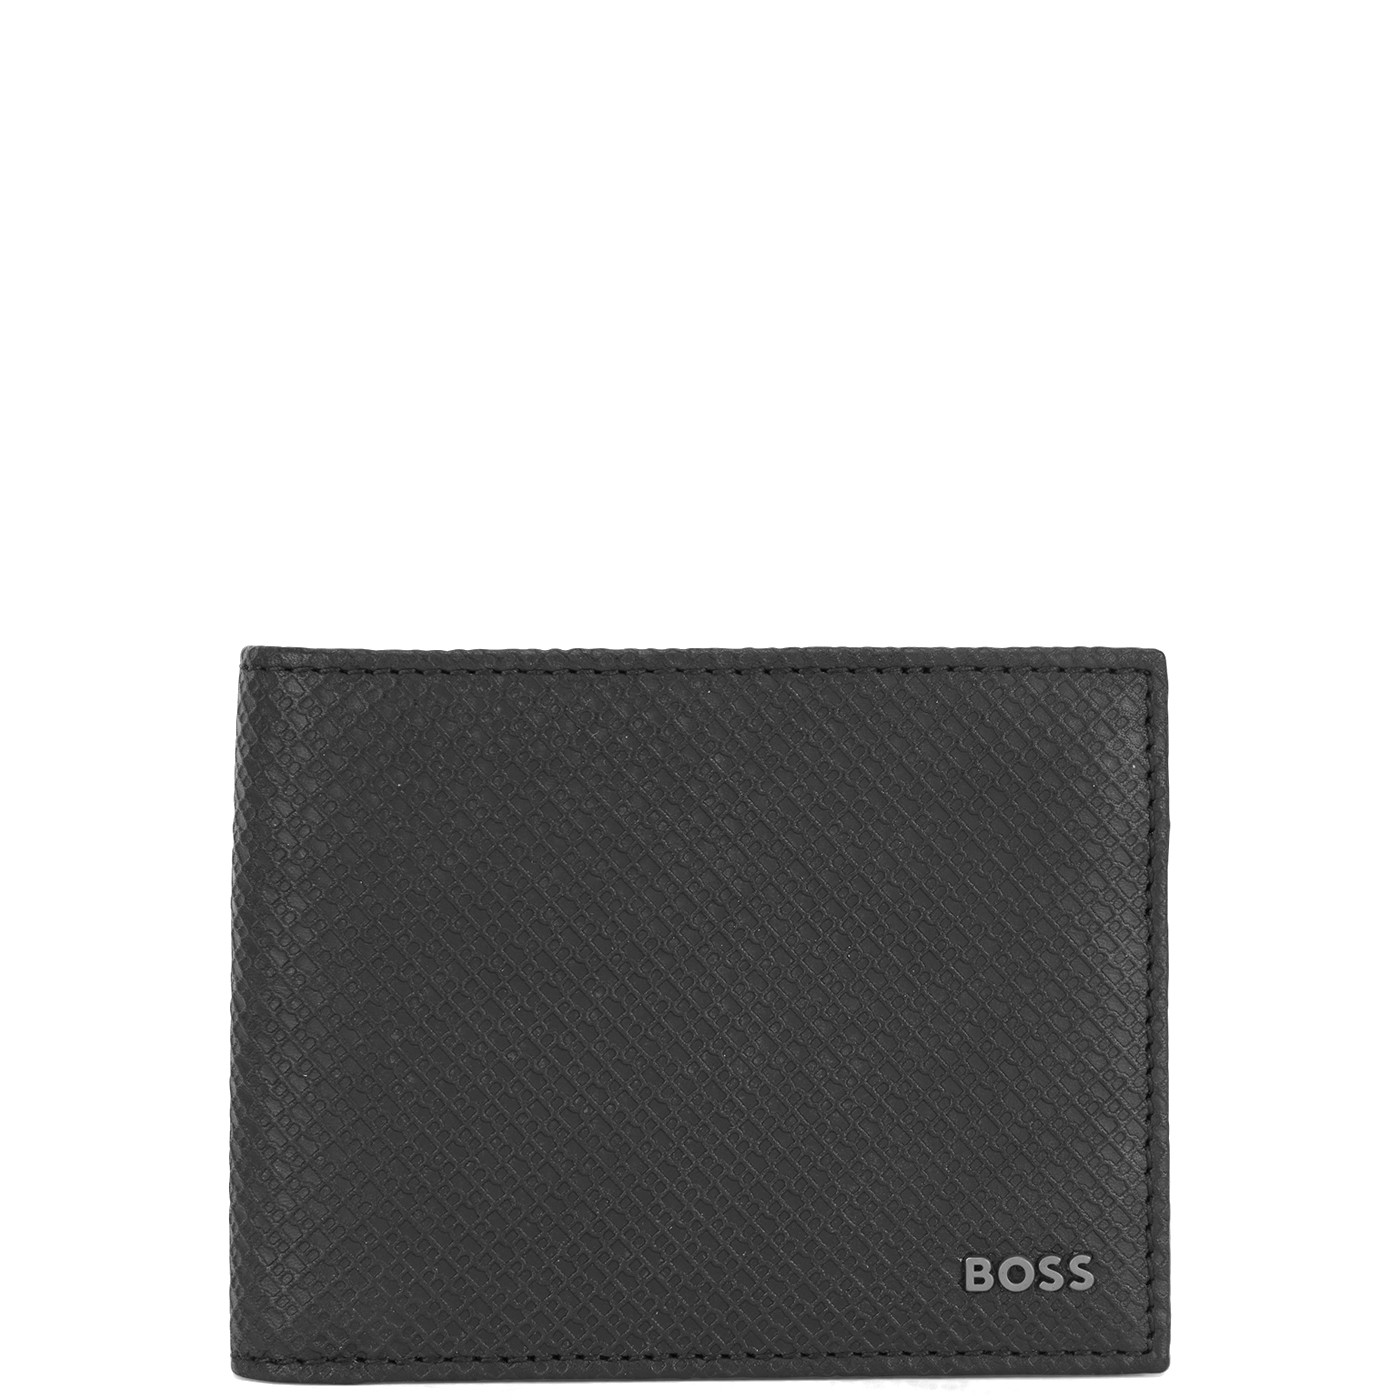 Hugo Boss BOSS Business Black Billfold Portemonnee 50475558-001